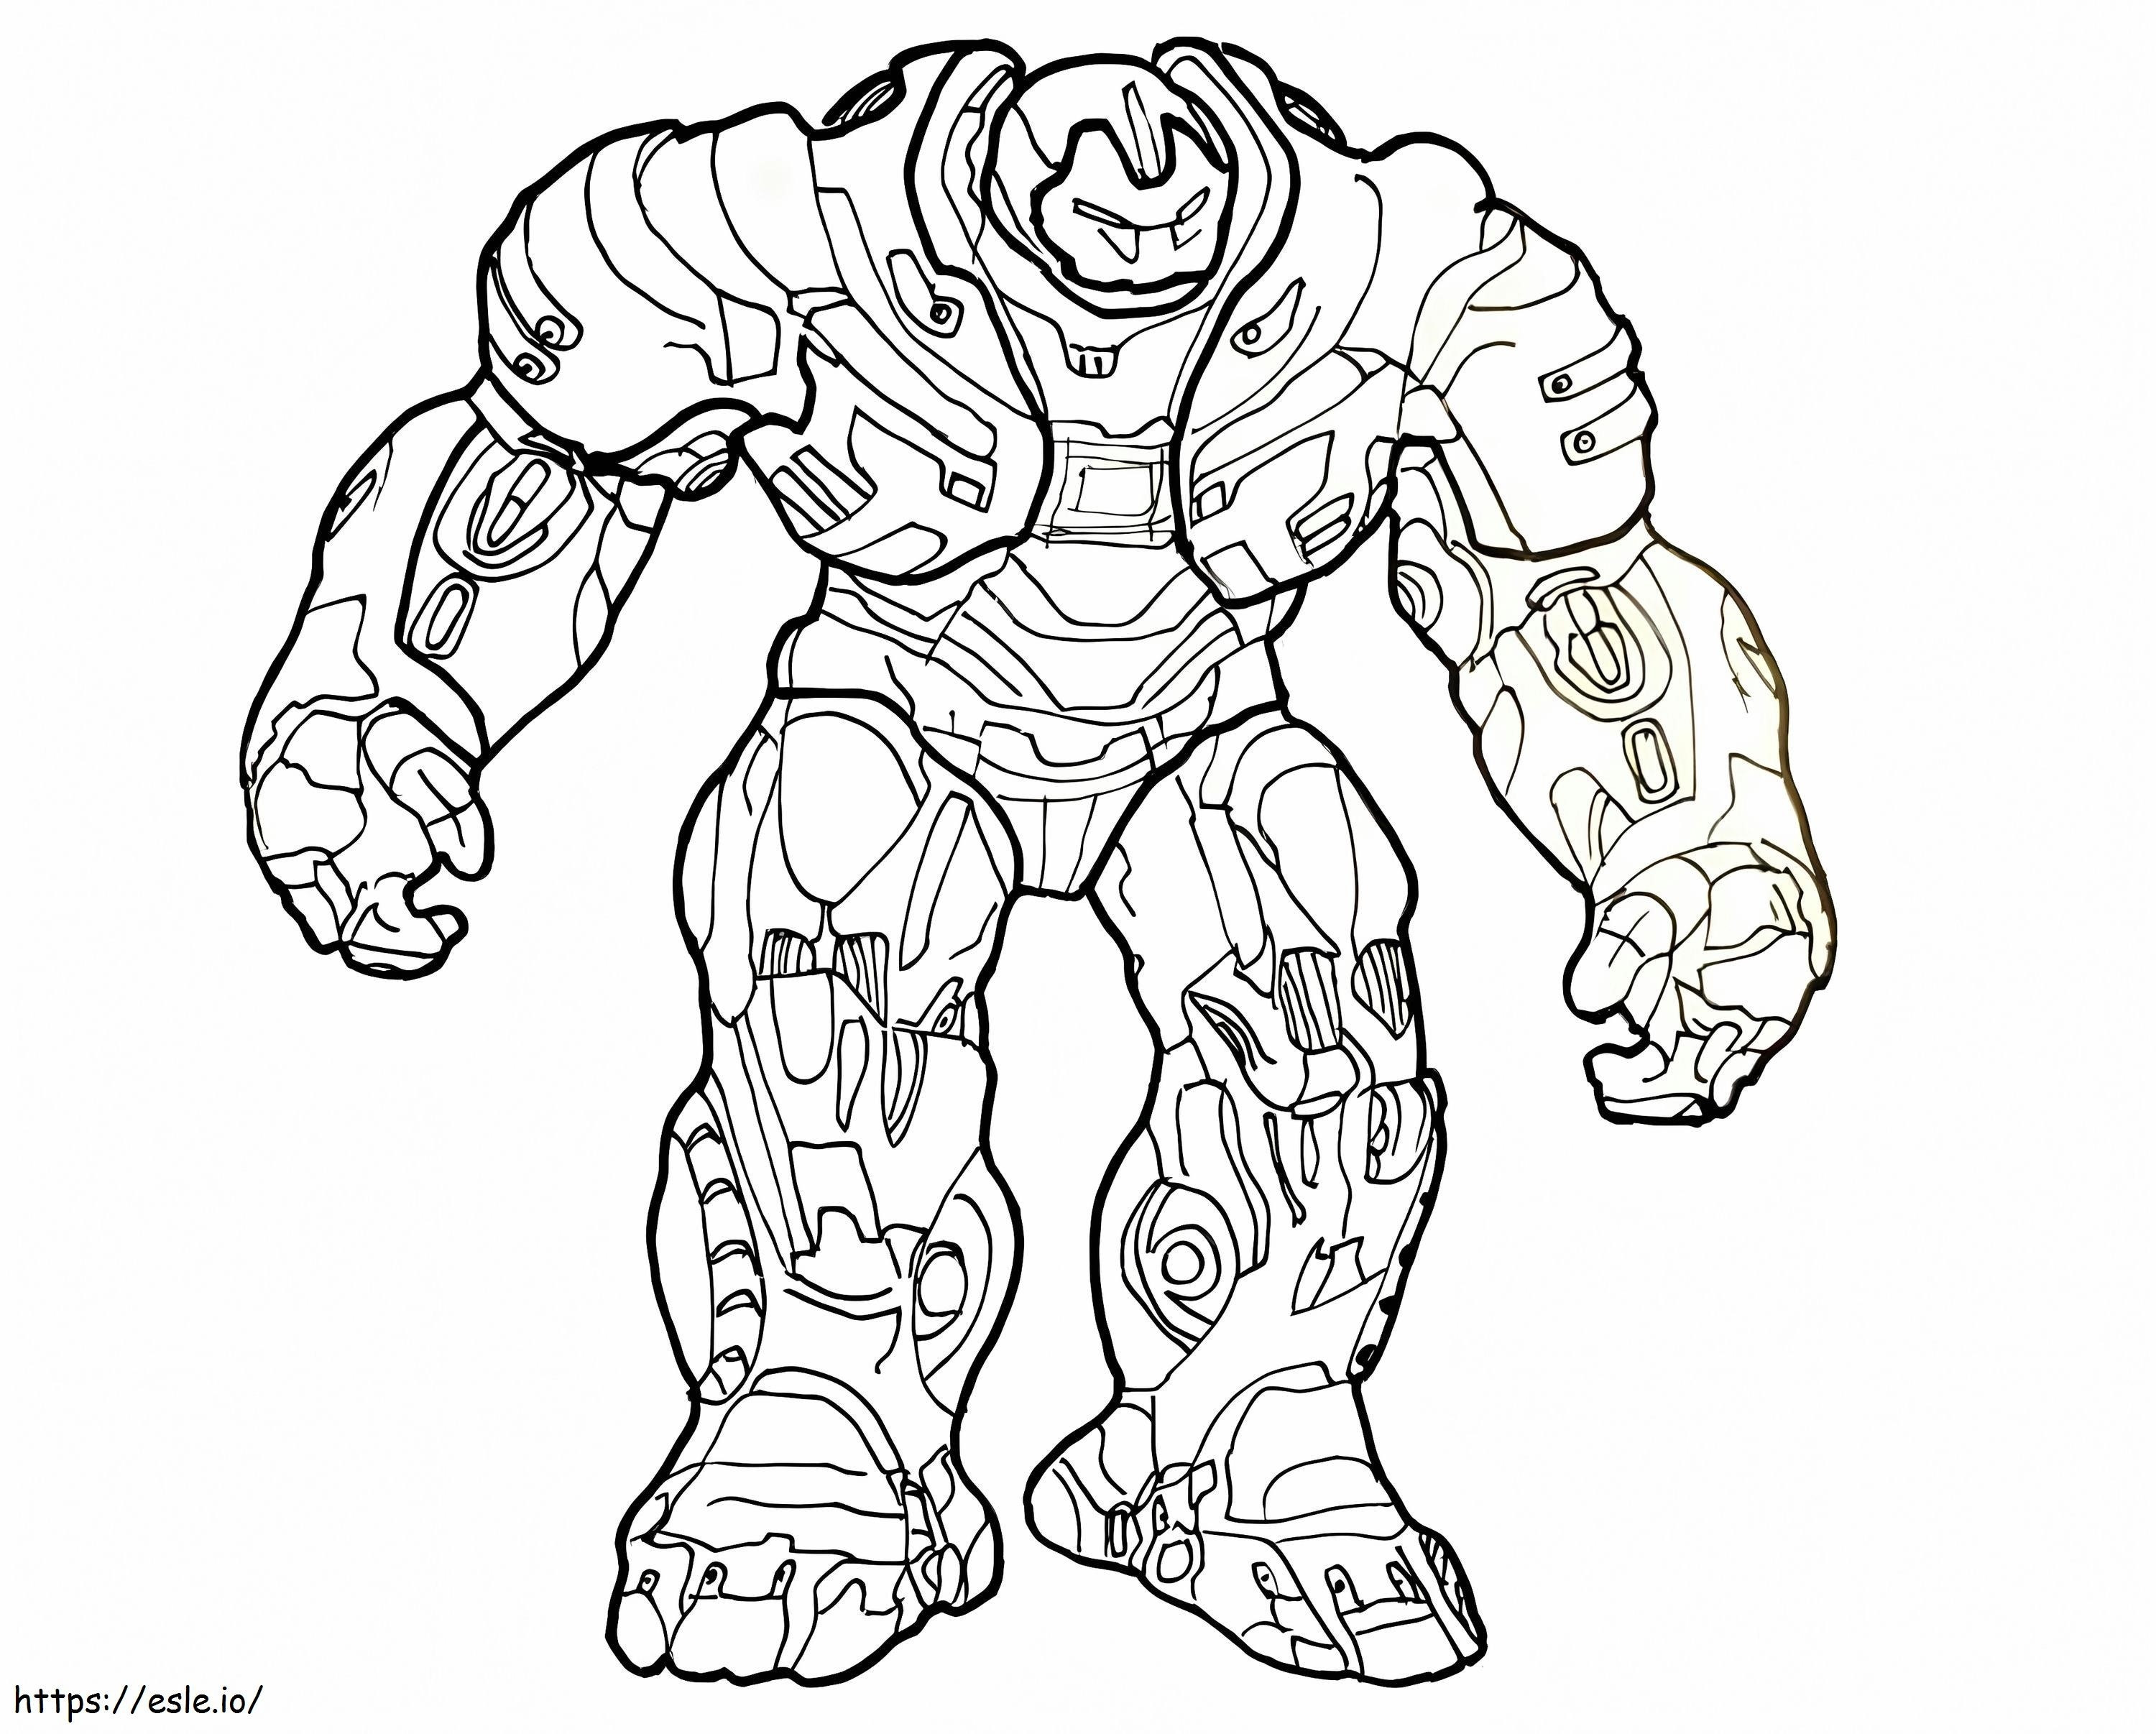 Hulkbuster 1 coloring page